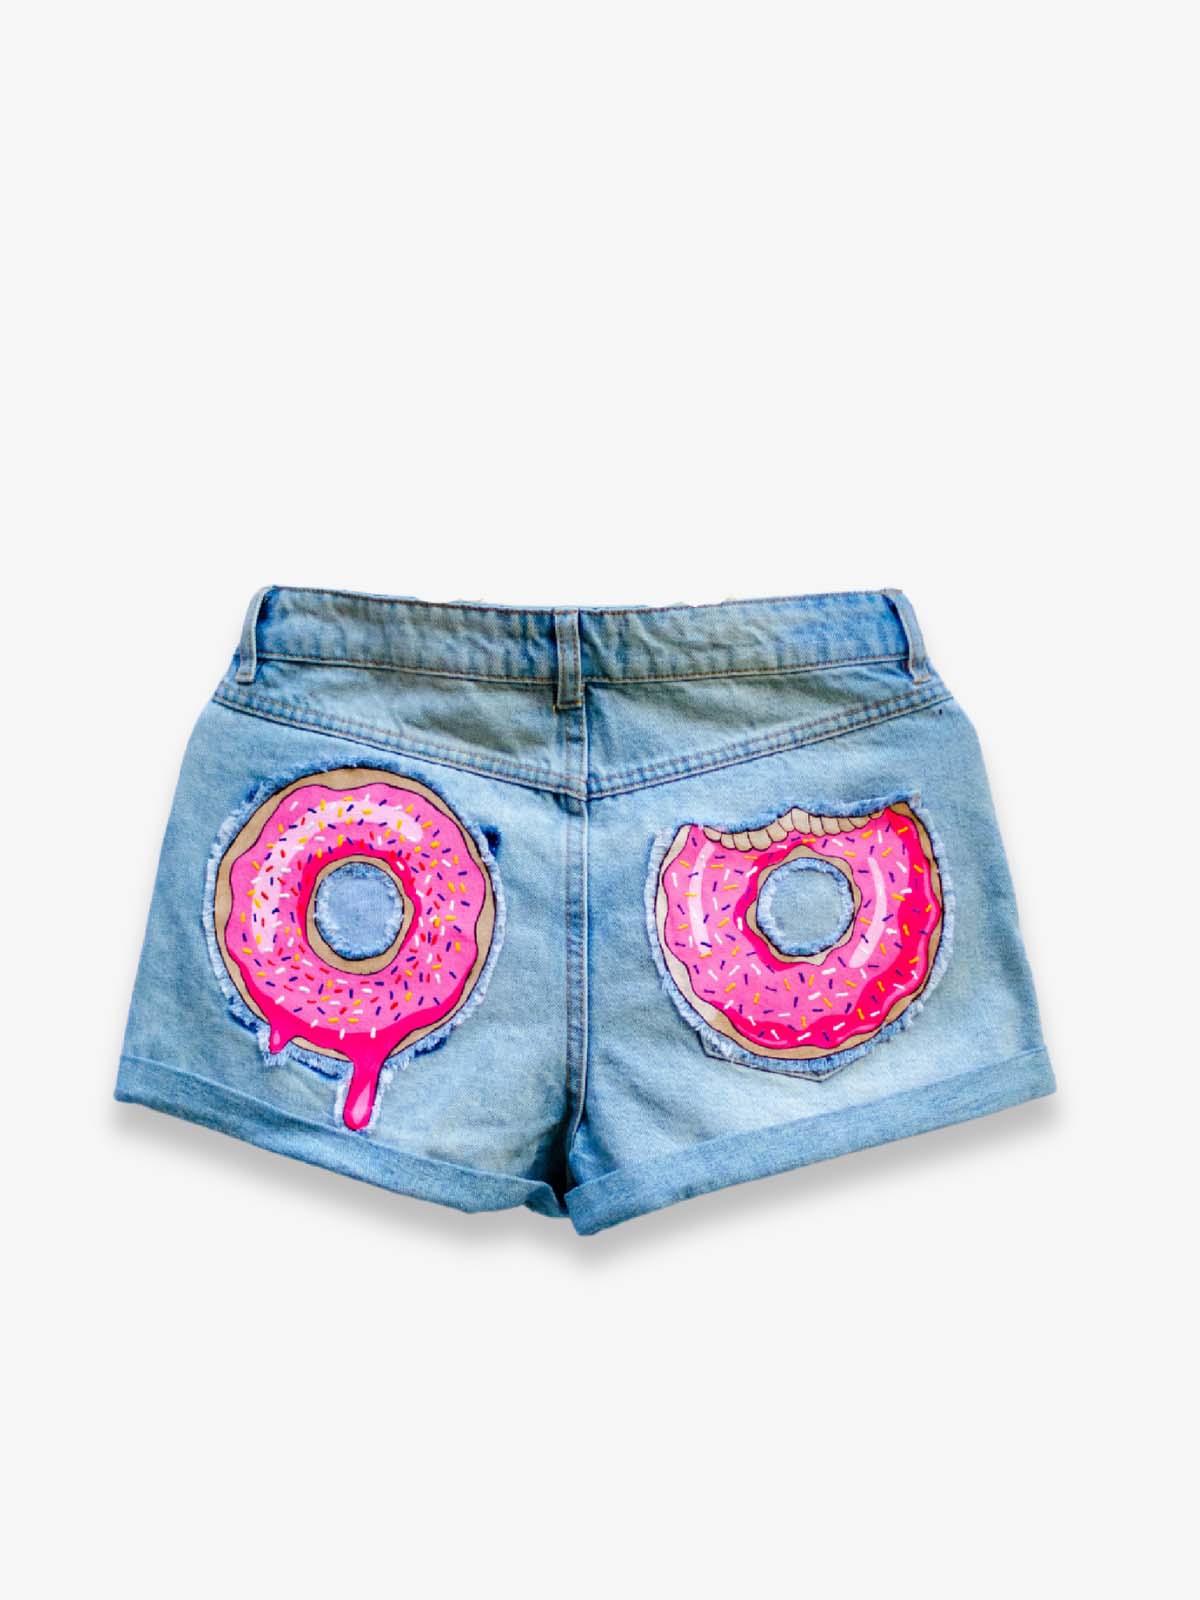 Donut Shorts